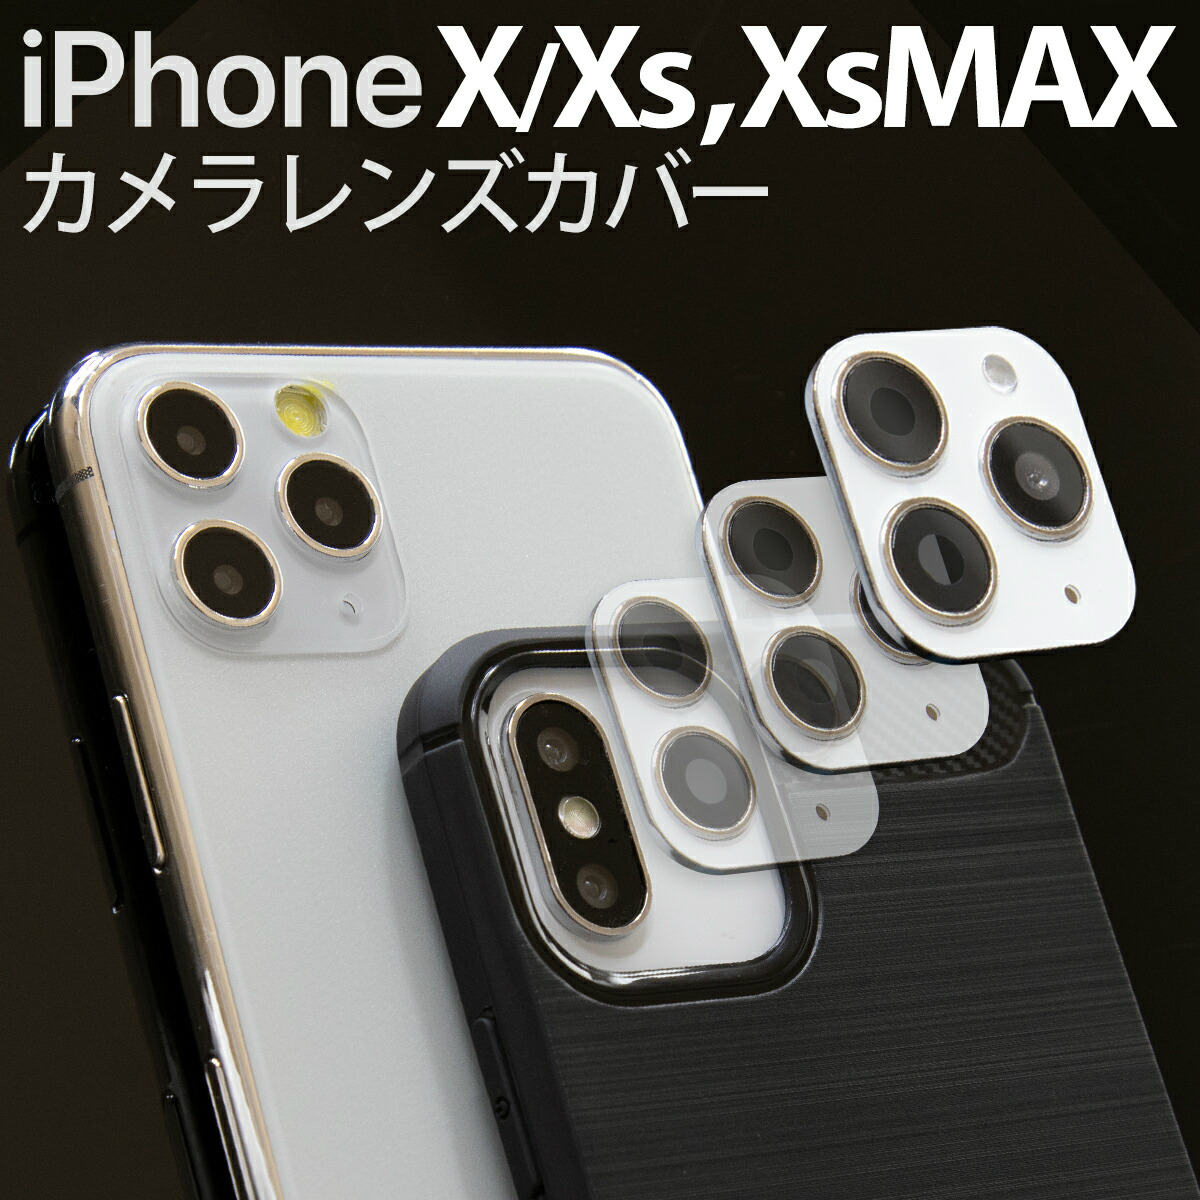 【最大30 offクーポン】 iPhoneX ガラスフィルム iPhoneXs iPhoneXs Max レンズ カバー カメラレンズカバー iPhone11Pro iPhone11ProMax 擬態 変身 おもしろ オシャレ カッコつける sale カメラフィルム